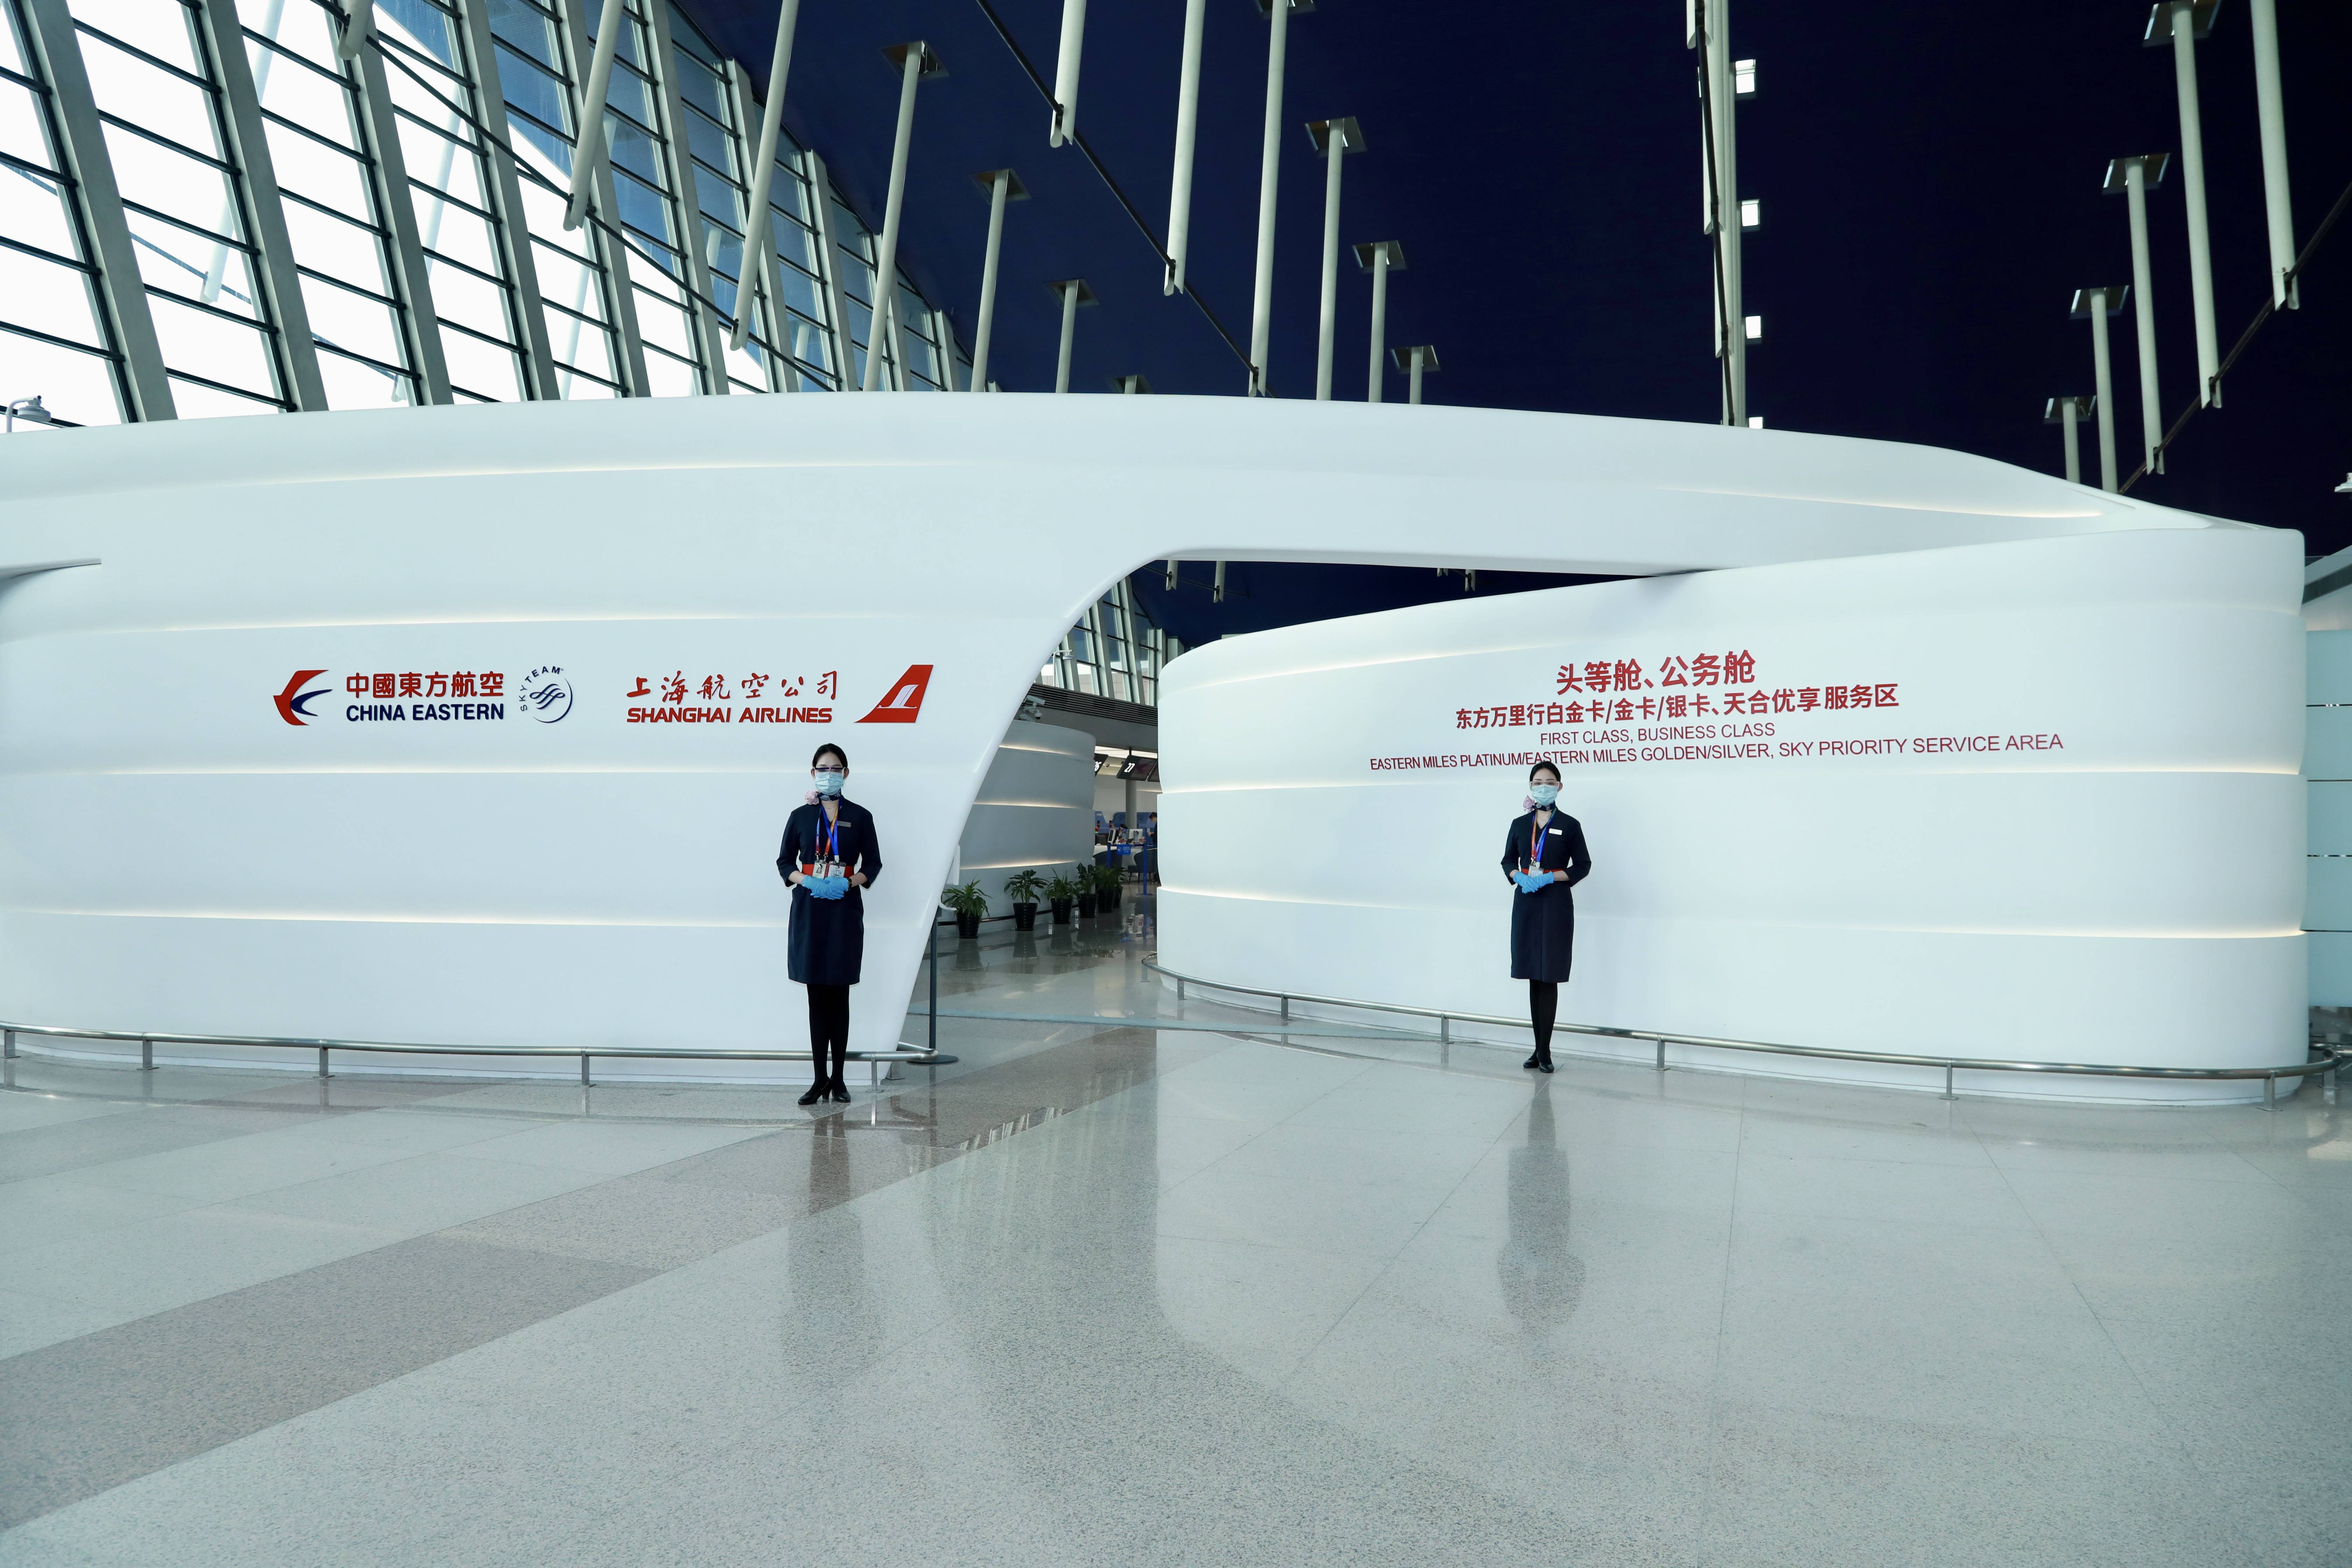 中国东航在上海浦东机场新开M岛高端值机区提供“一站式服务”